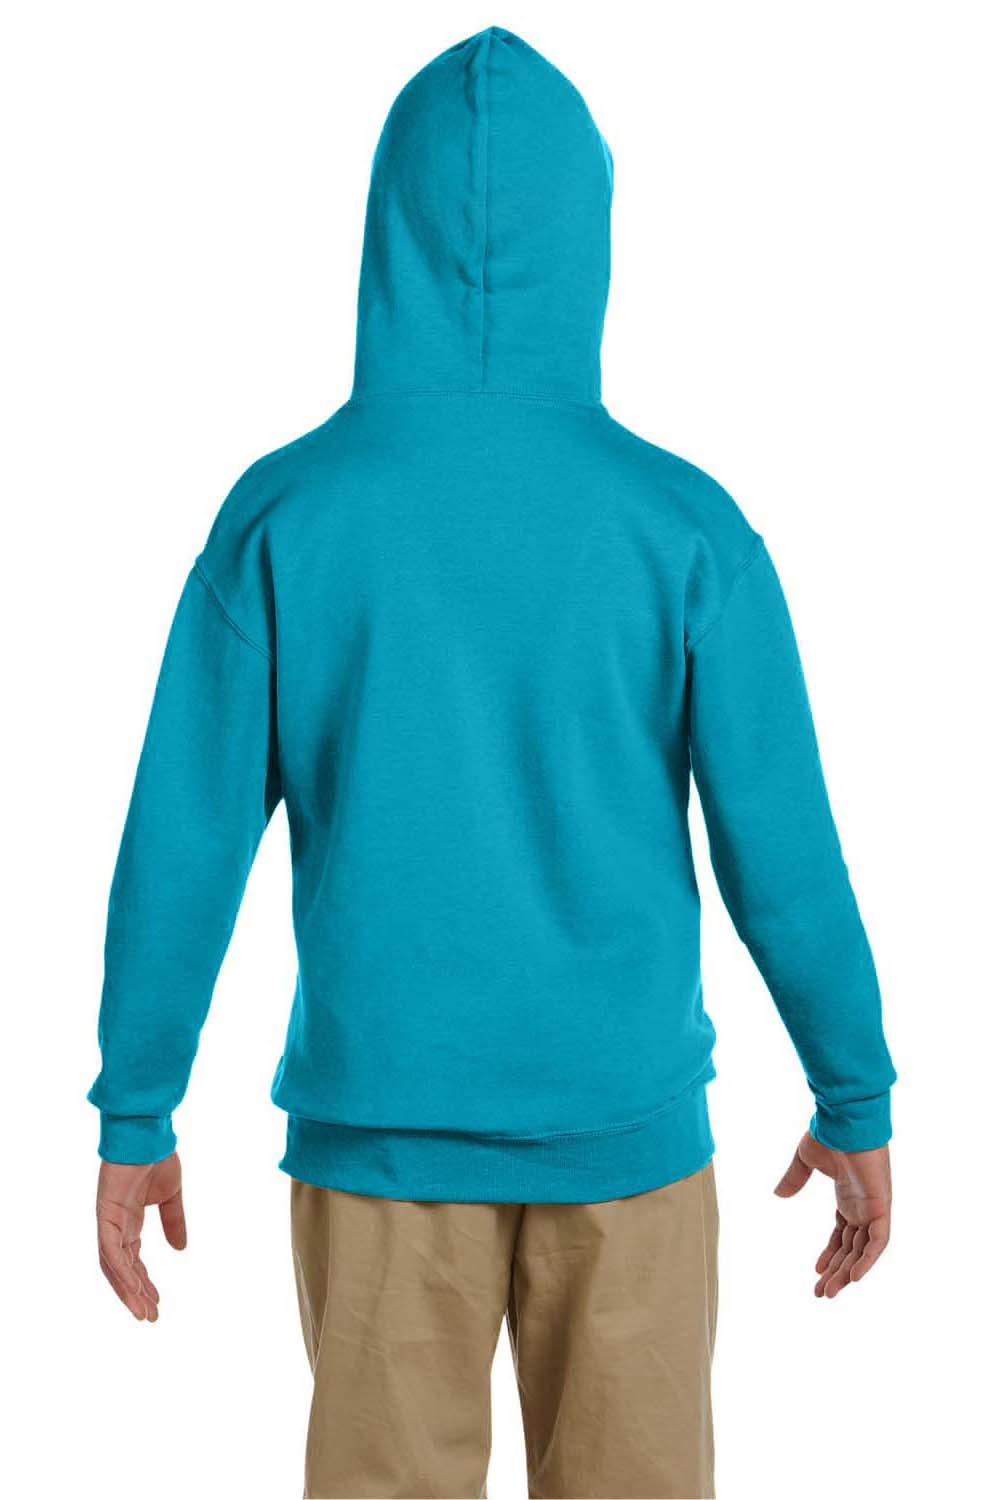 Jerzees 996Y Youth NuBlend Fleece Hooded Sweatshirt Hoodie California Blue Back